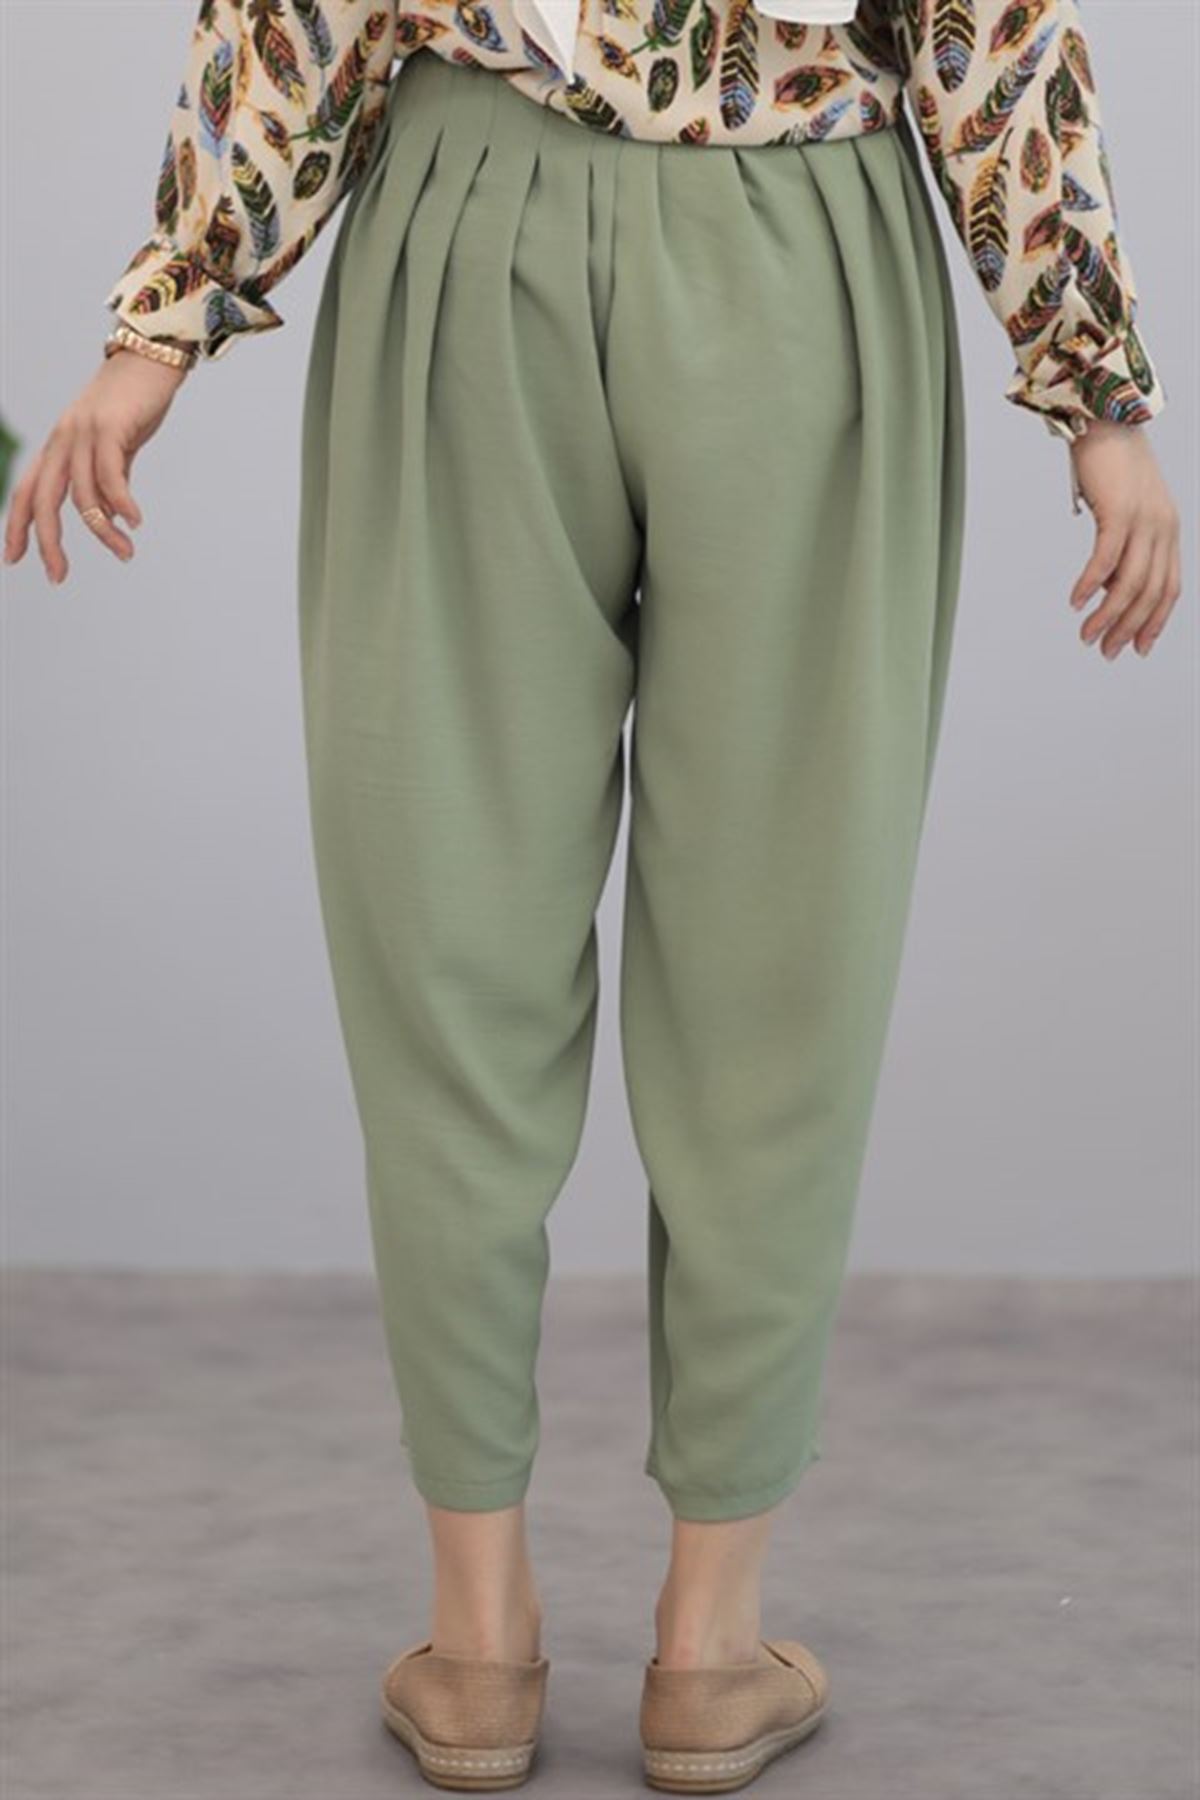 Kadın Pileli Salaş pantolon - Fıstık Yeşili